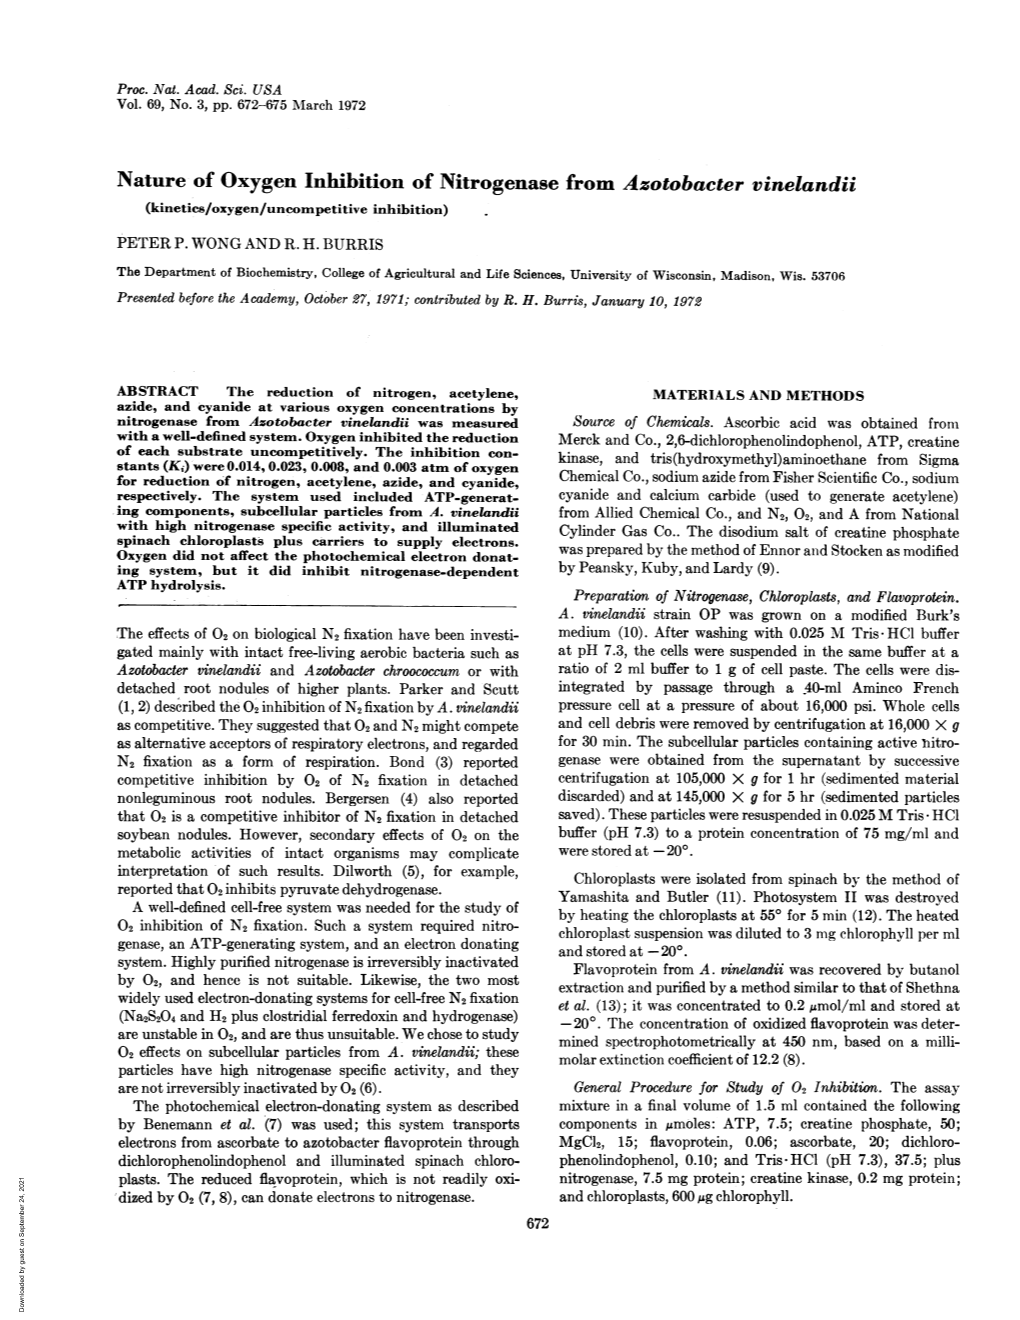 Nature of Oxygen Inhibition of Nitrogenase from Azotobacter Vinelandii (Kinetics/Oxygen/Uncompetitive Inhibition)